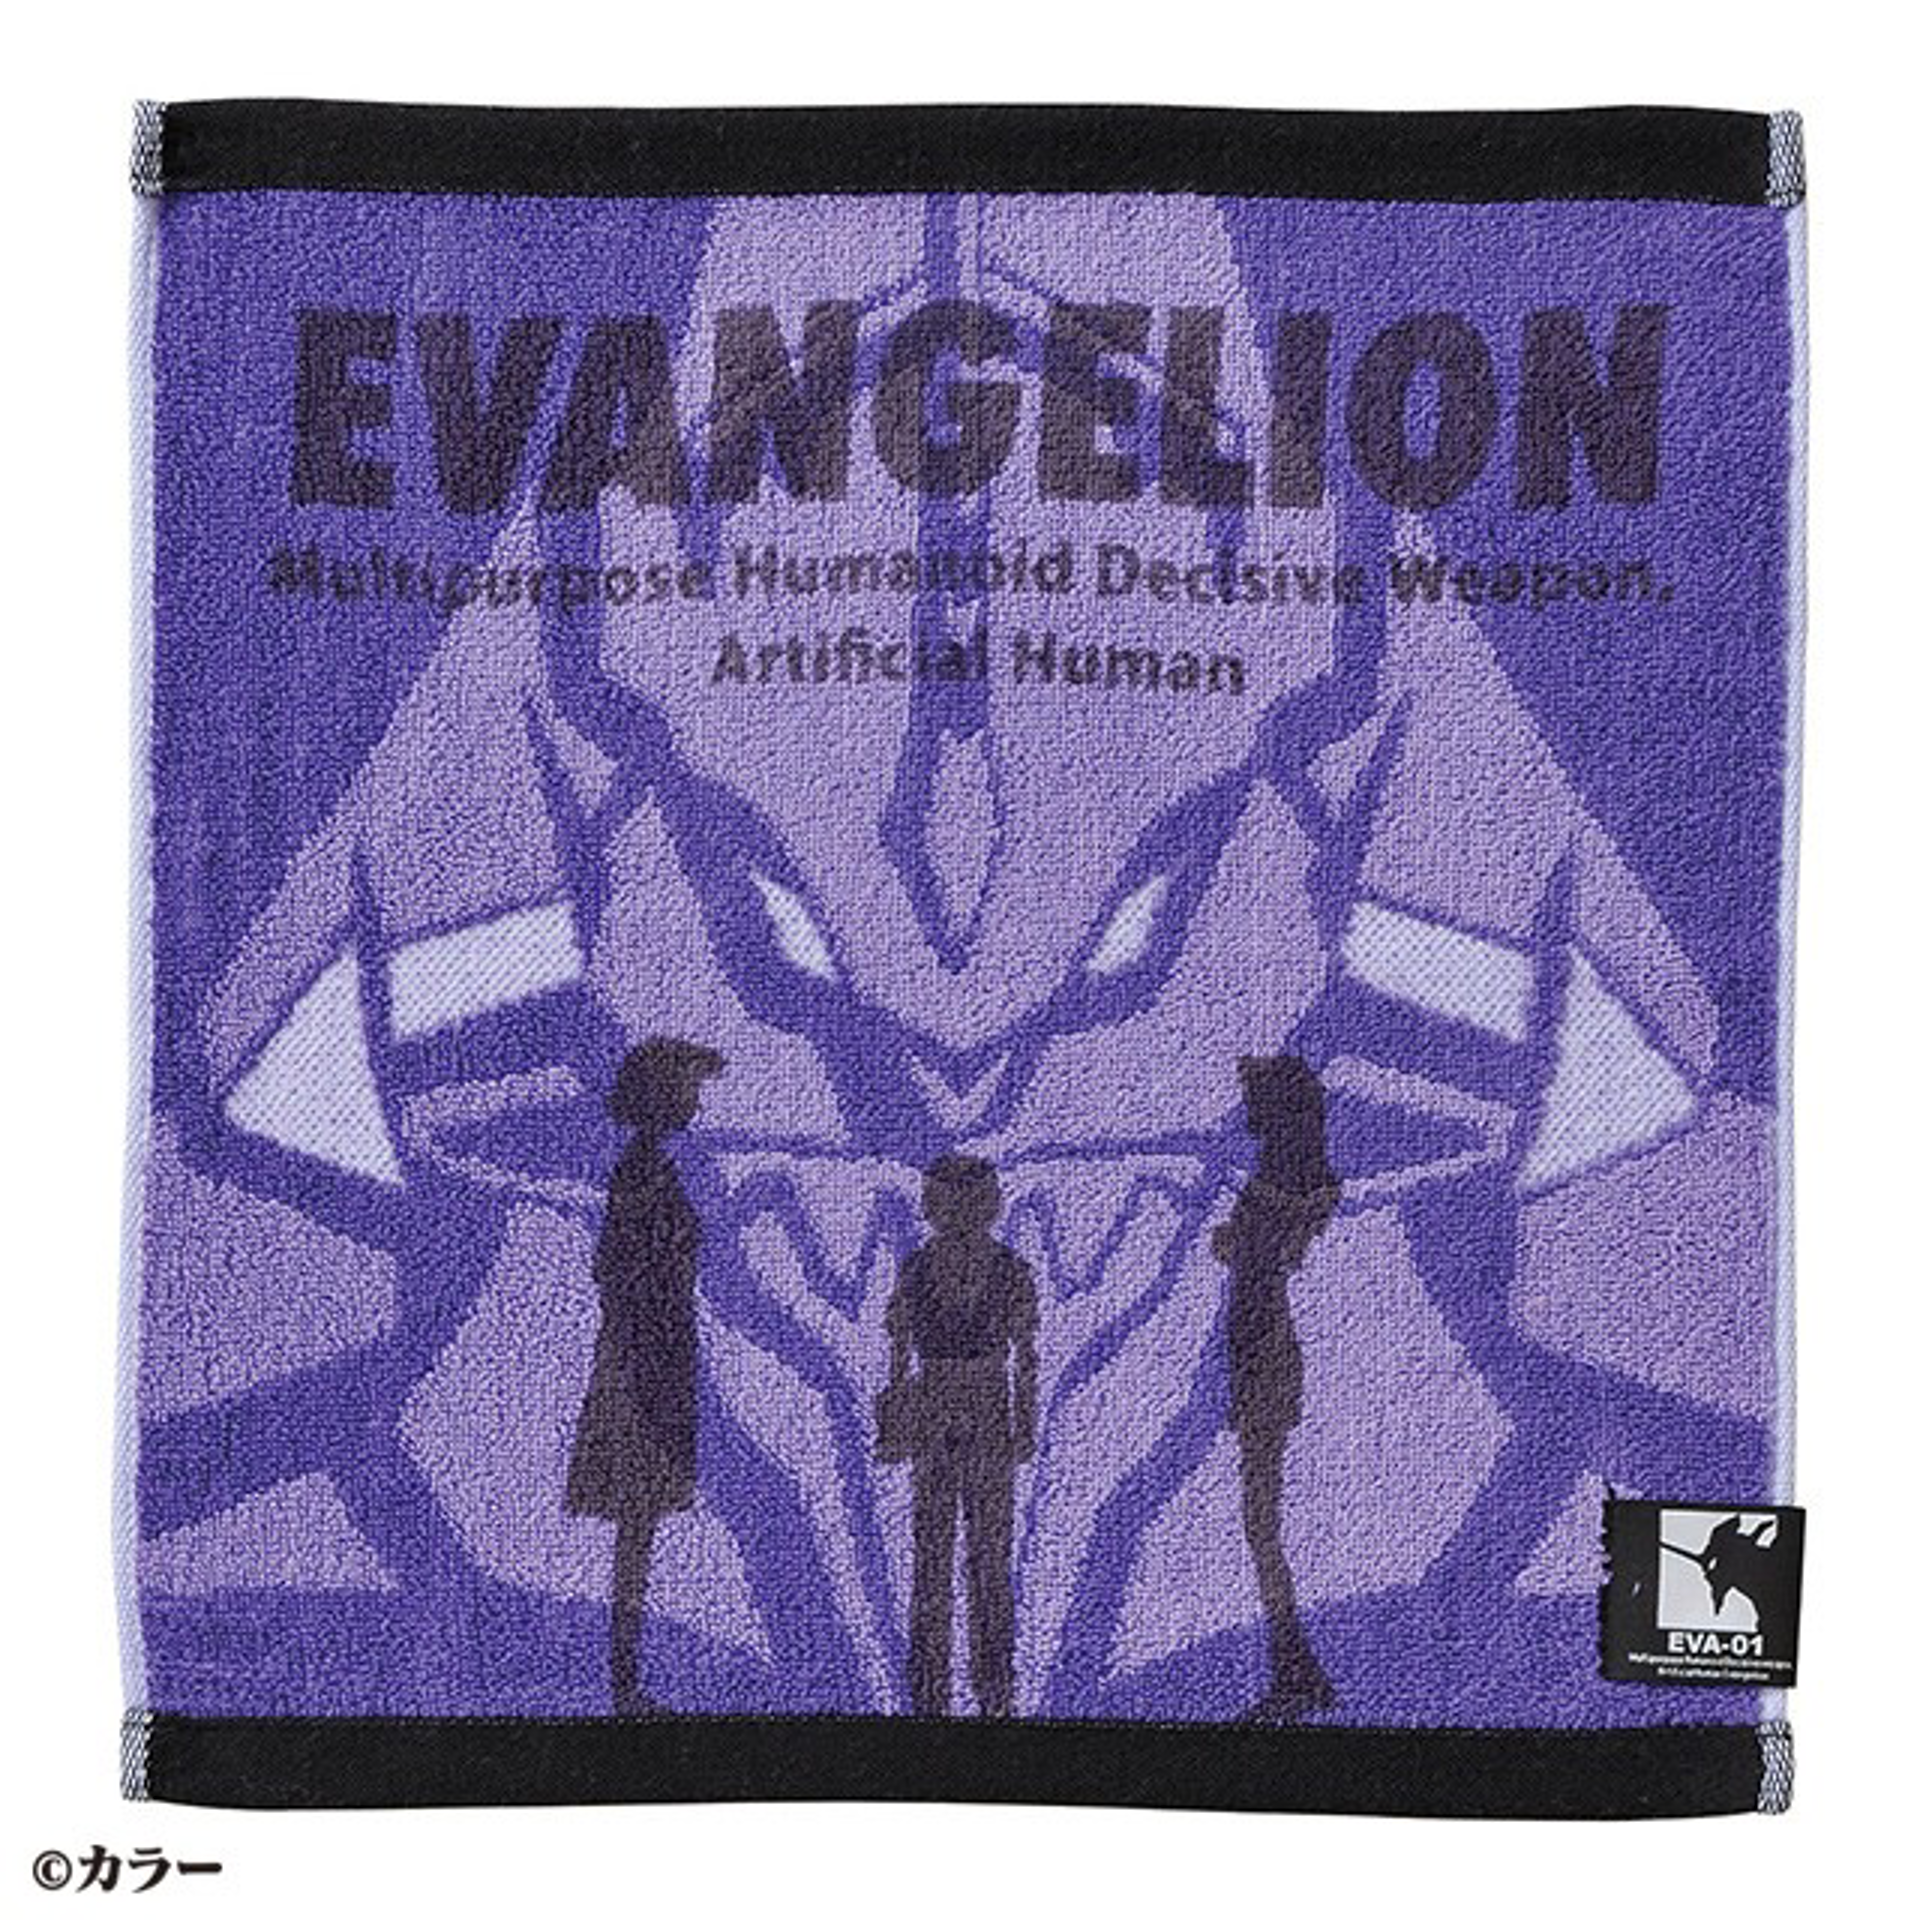 Evangelion - Serviette Premier envol 34x36cm